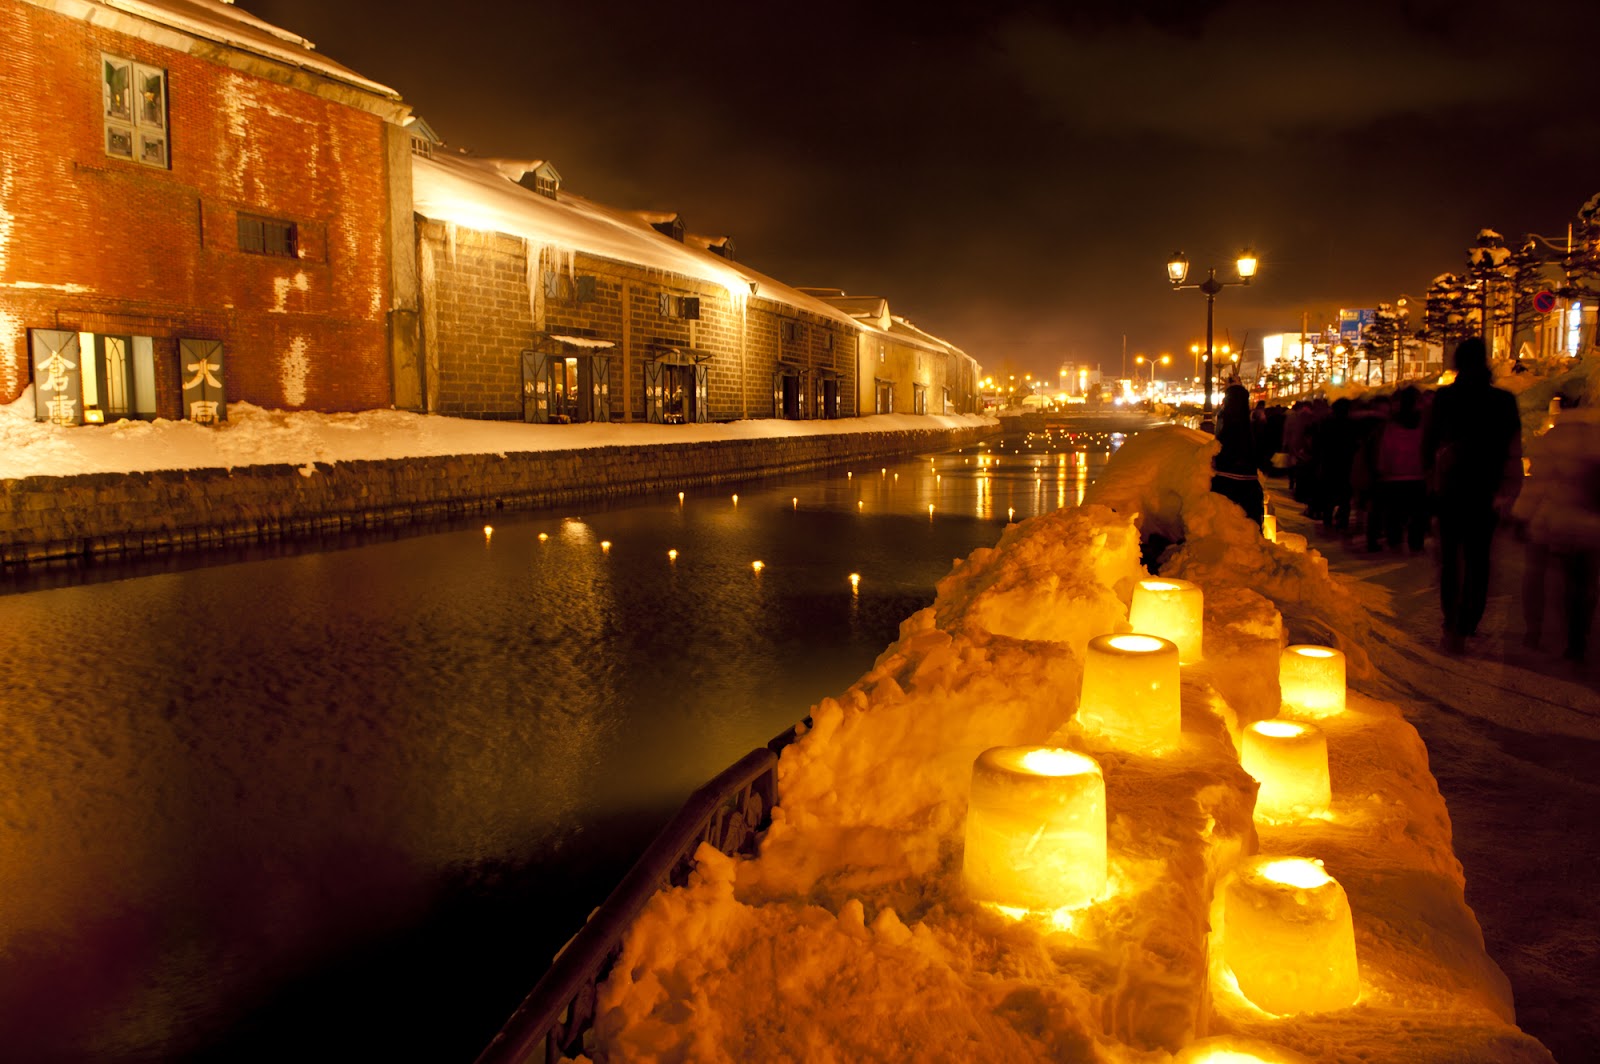 4. 小樽市 レトロな街並みで優しさが街に灯る「雪あかりの路」